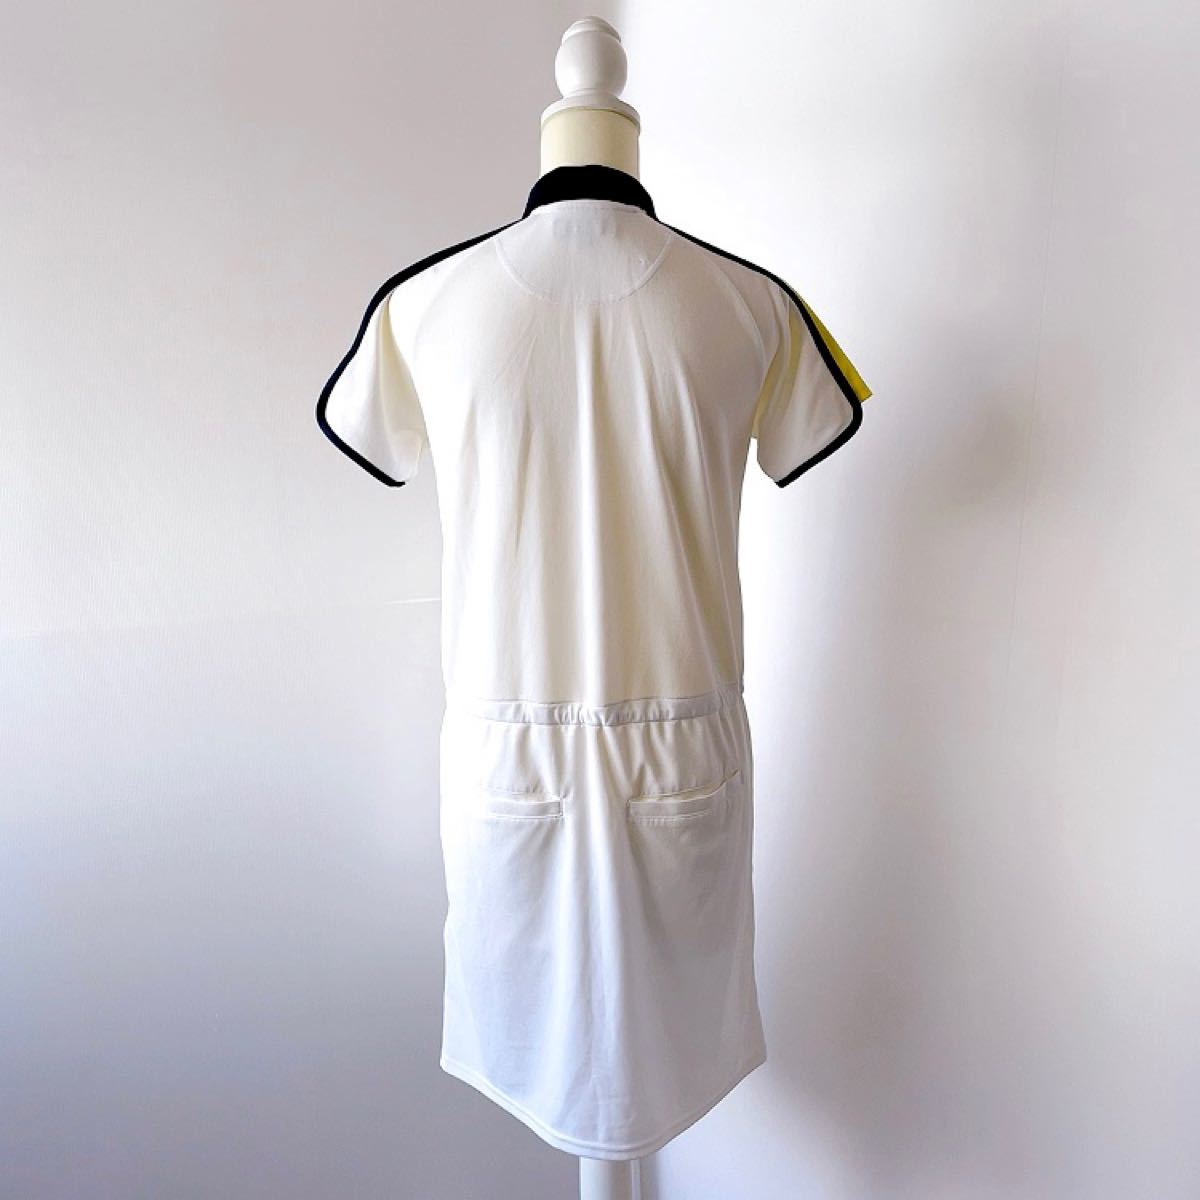 【未使用品】Callaway キャロウェイ ワンピース ゴルフウェア レディース Mサイズ 白 ホワイト ロゴ 刺繍 半袖